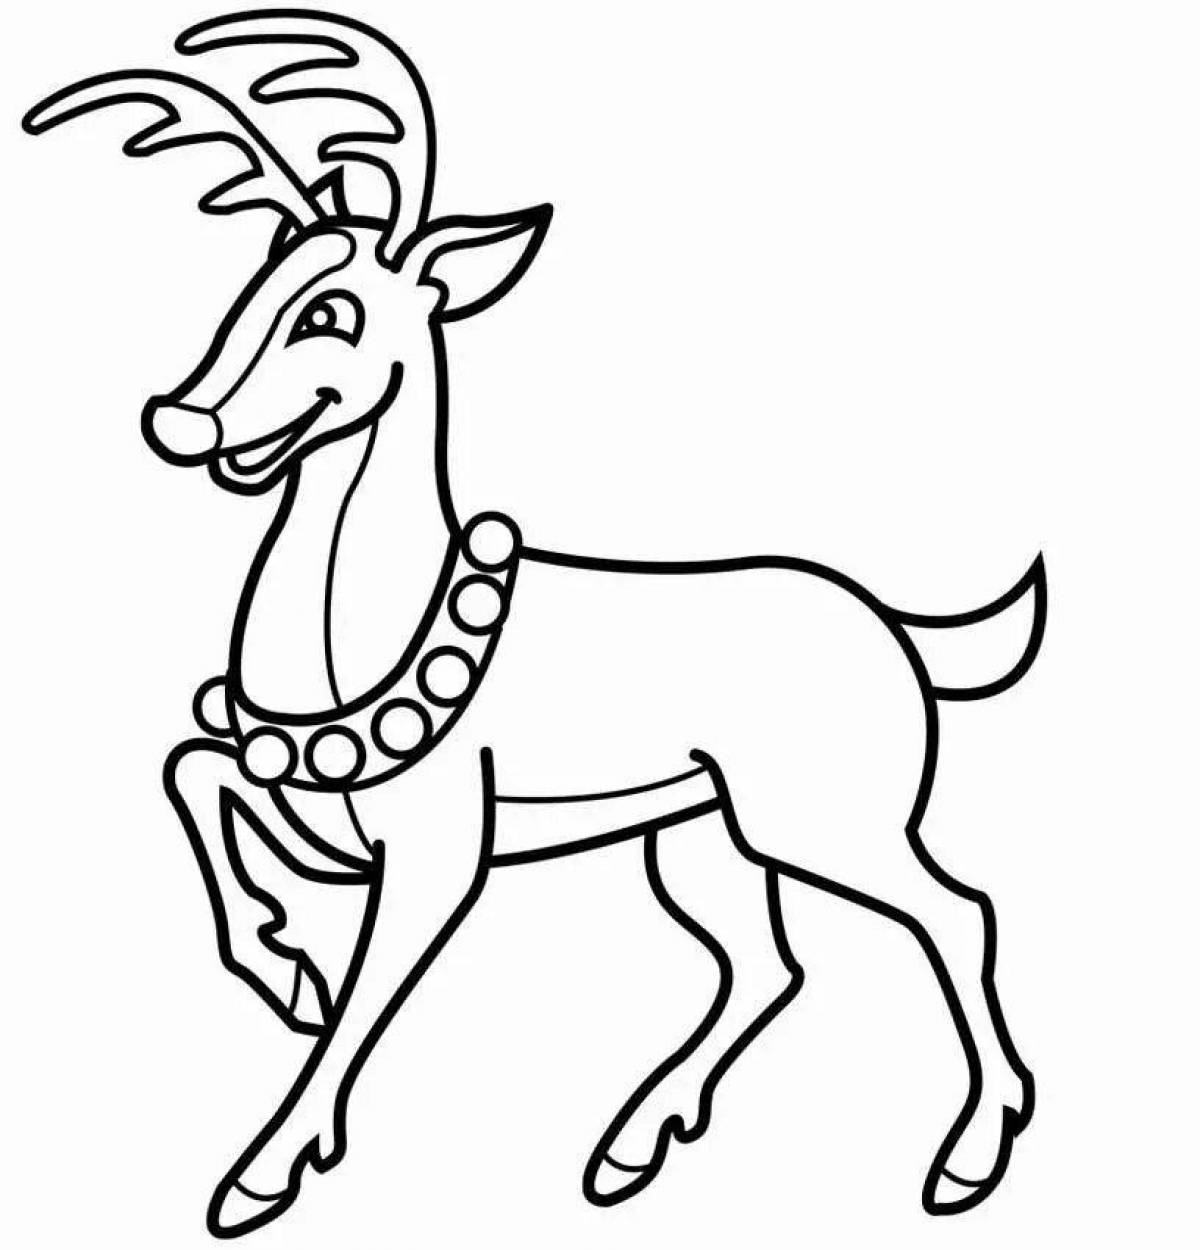 Humorous reindeer coloring book